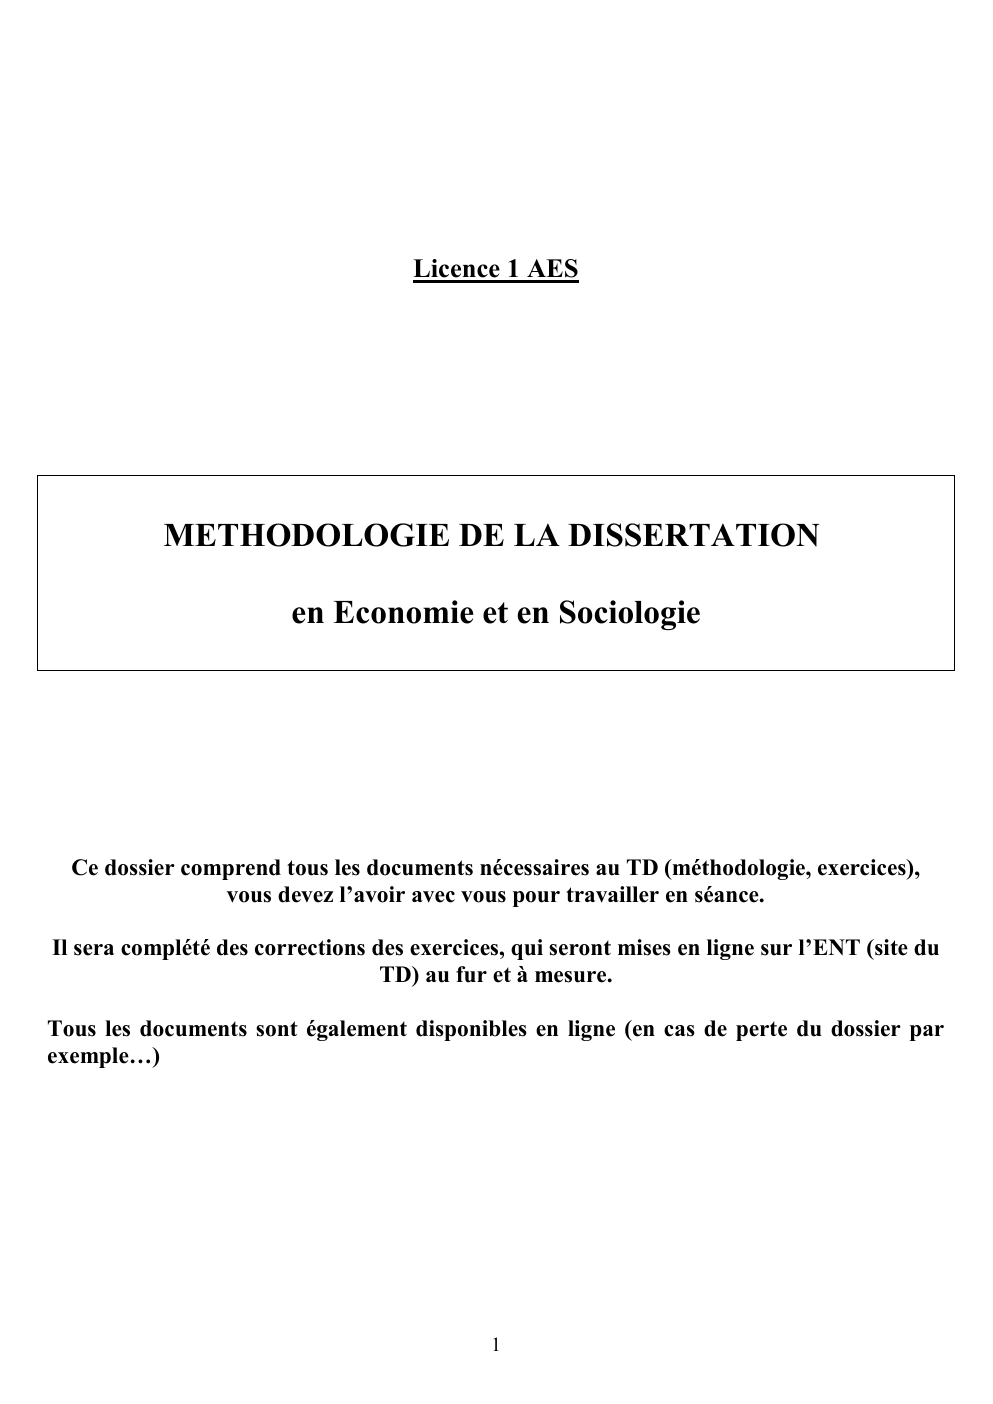 Prévisualisation du document METHODOLOGIE DE LA DISSERTATION en Economie et en Sociologie